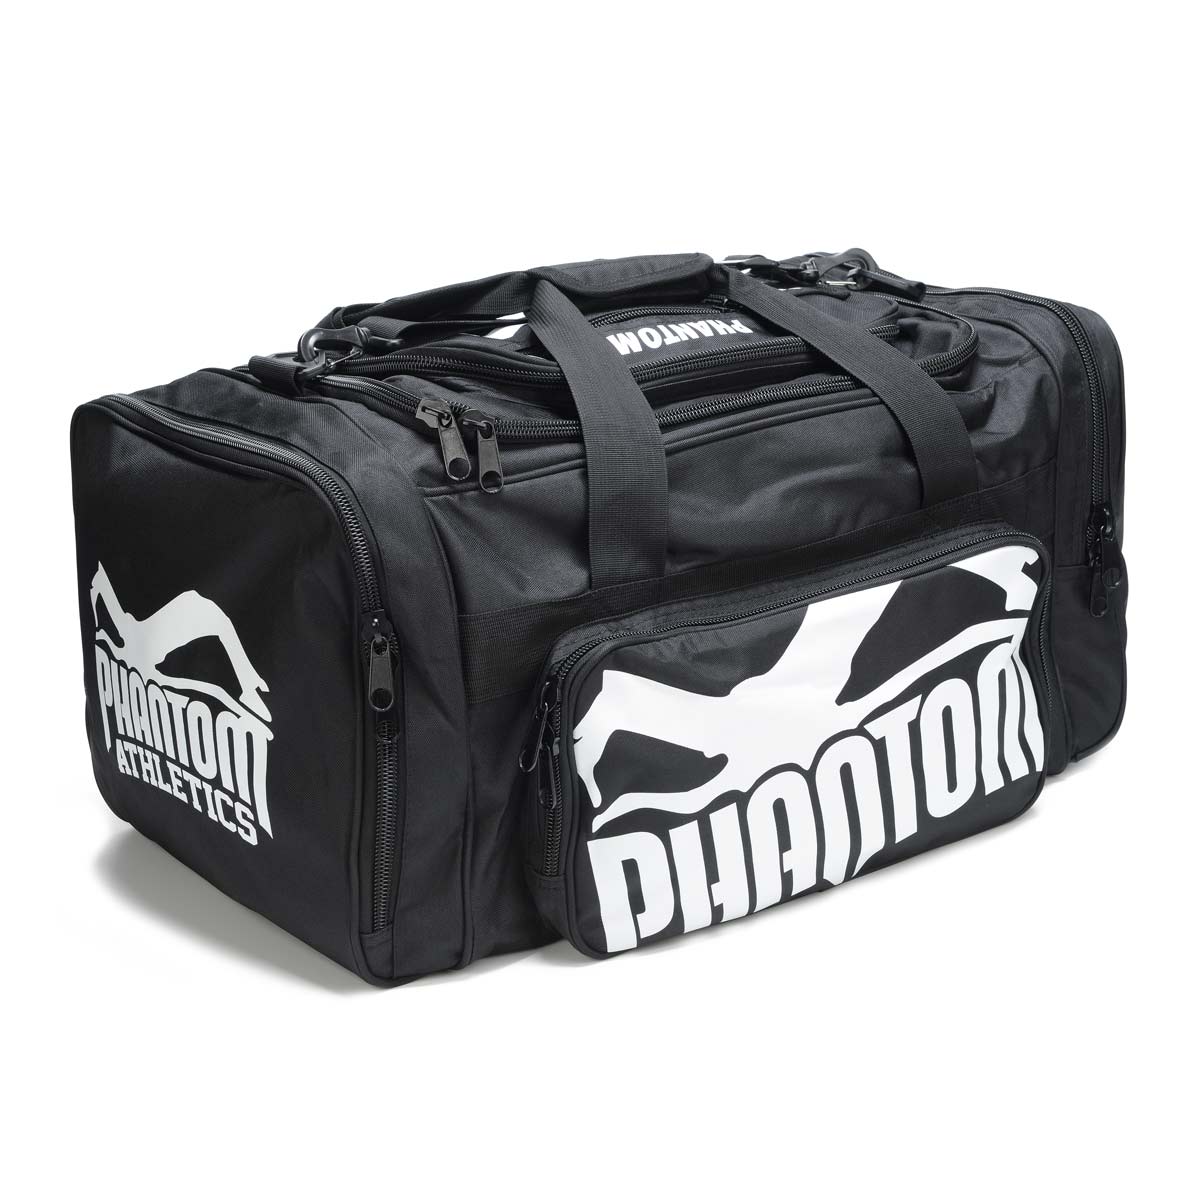 La bolsa de entrenamiento Phantom Team con mucho espacio de almacenamiento para tu equipo de artes marciales